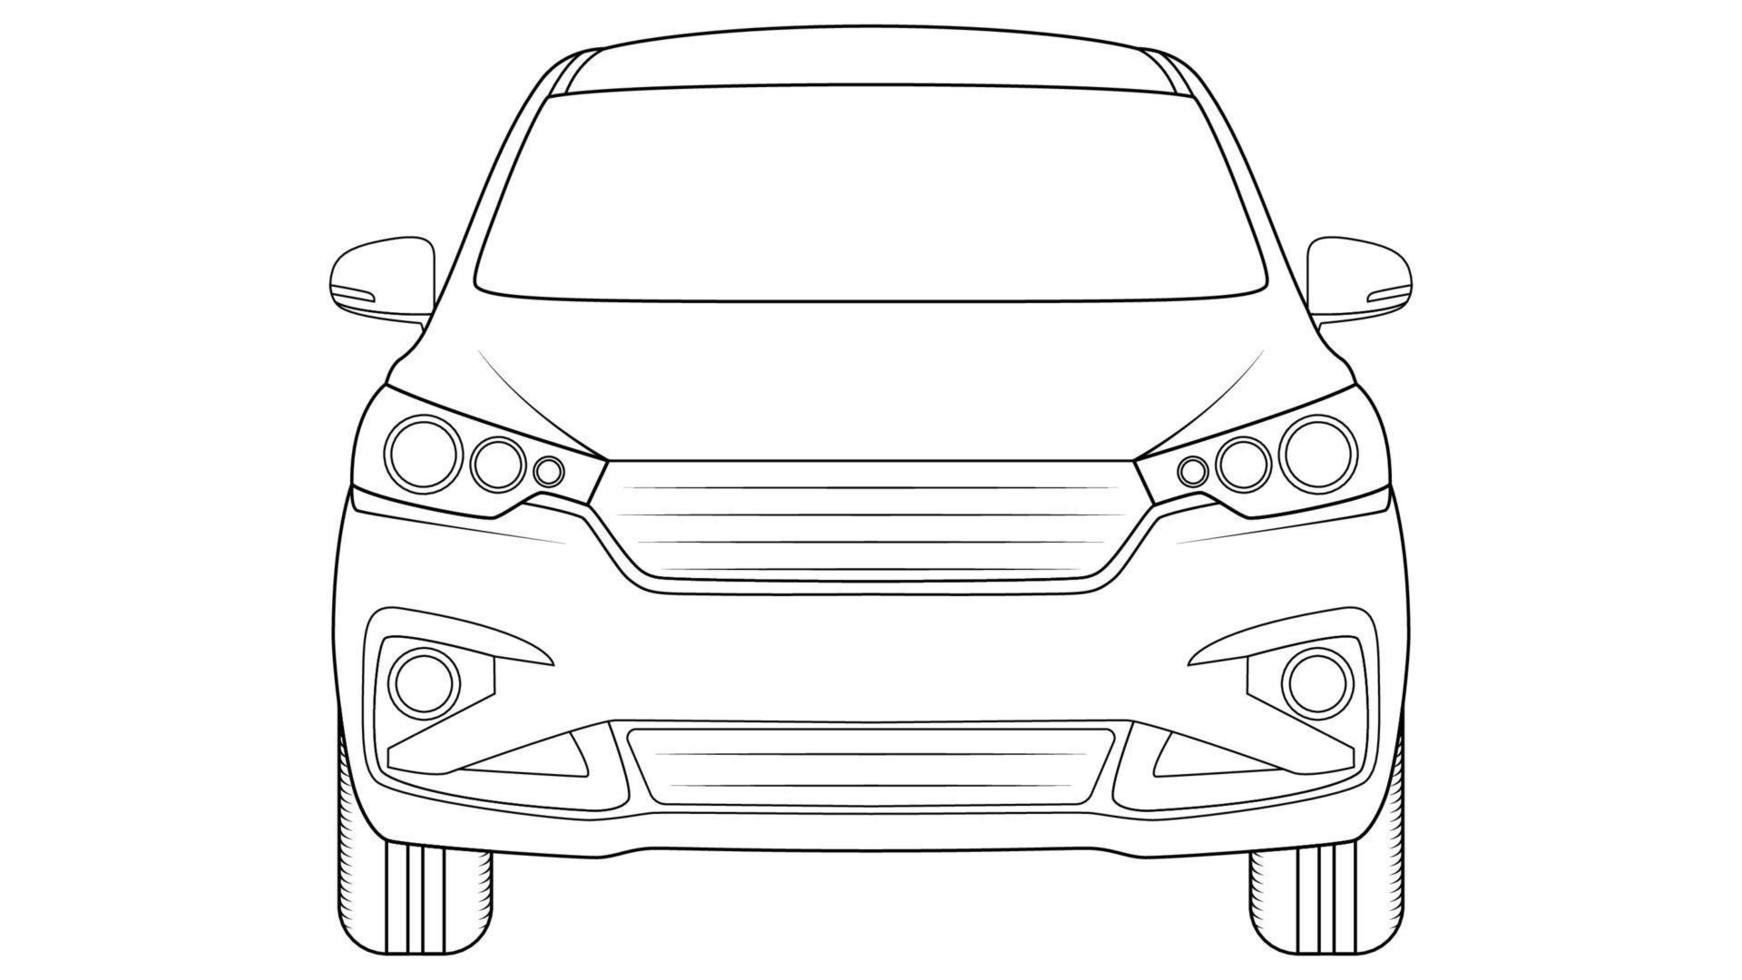 Premium-Auto-Umriss-Vektor-Illustration auf weißem Hintergrund vektor